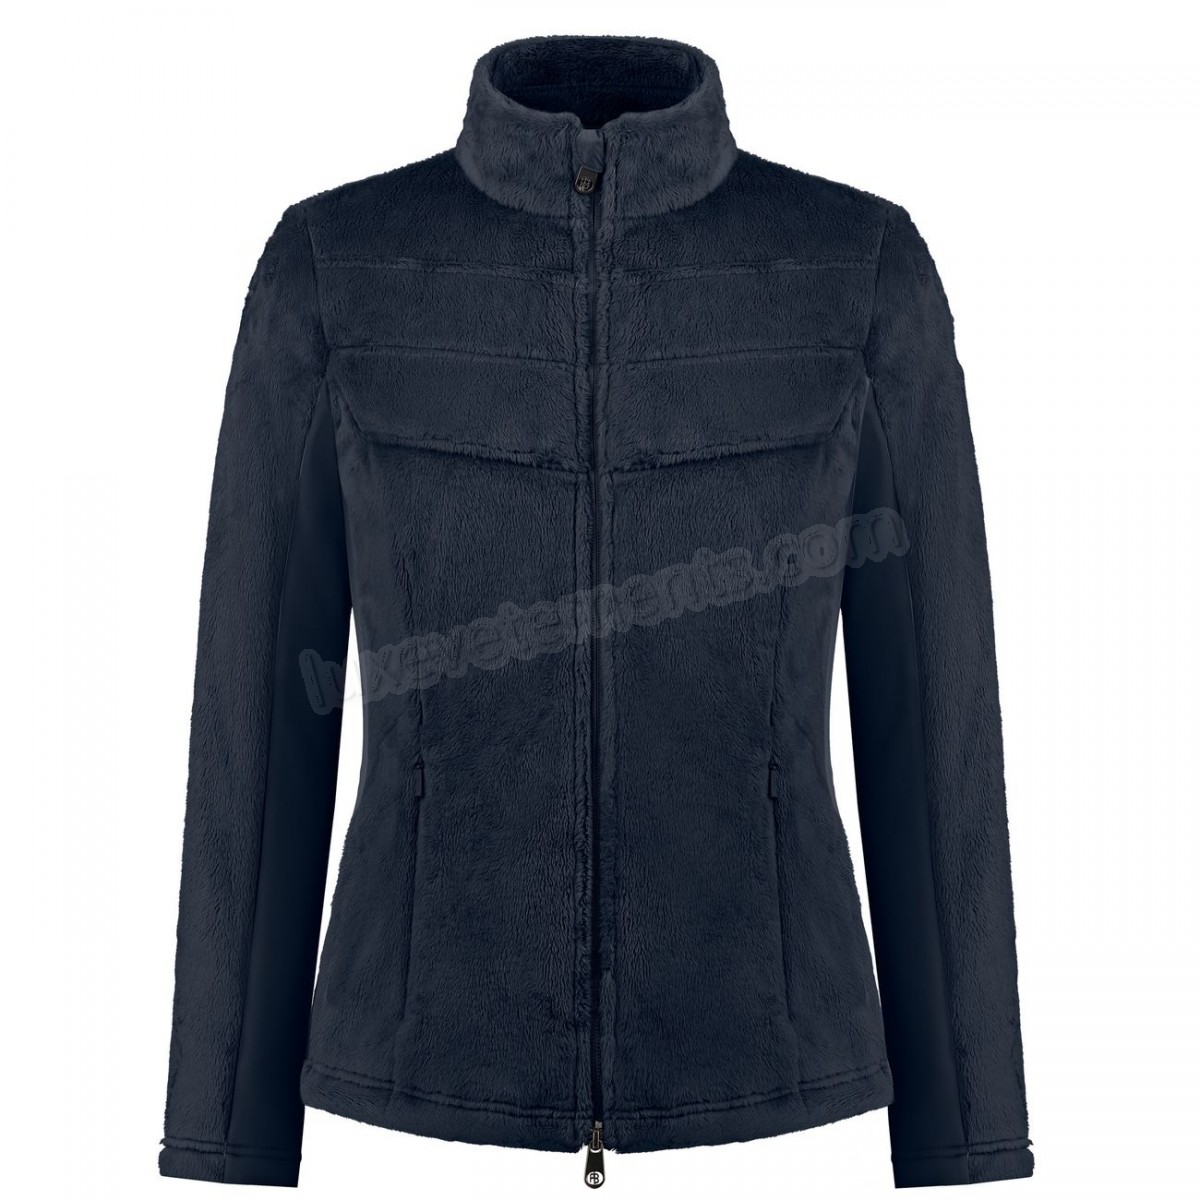 Poivre Blanc-Sports d'hiver femme POIVRE BLANC Polaire Poivre Blanc Long Pile Fleece Jacket 1603 Gothic Blue 4 Femme Vente en ligne - -1